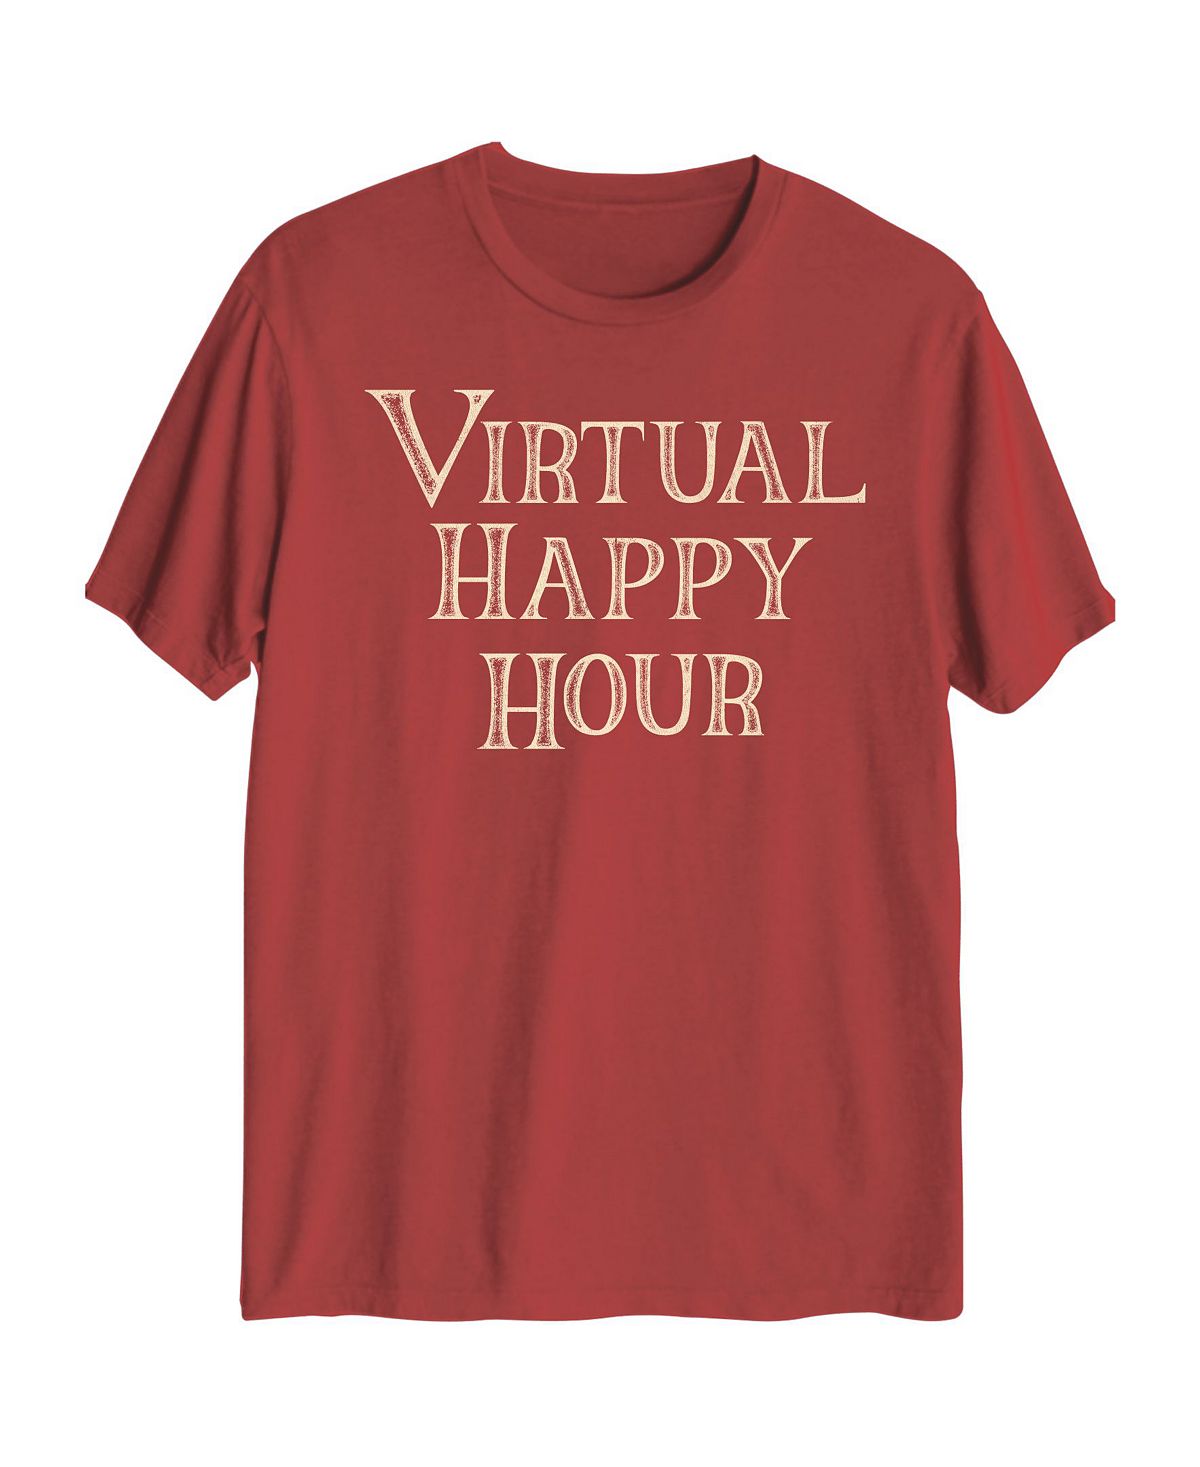 Мужская футболка с графикой virtual happy hour hybrid AIRWAVES, красный